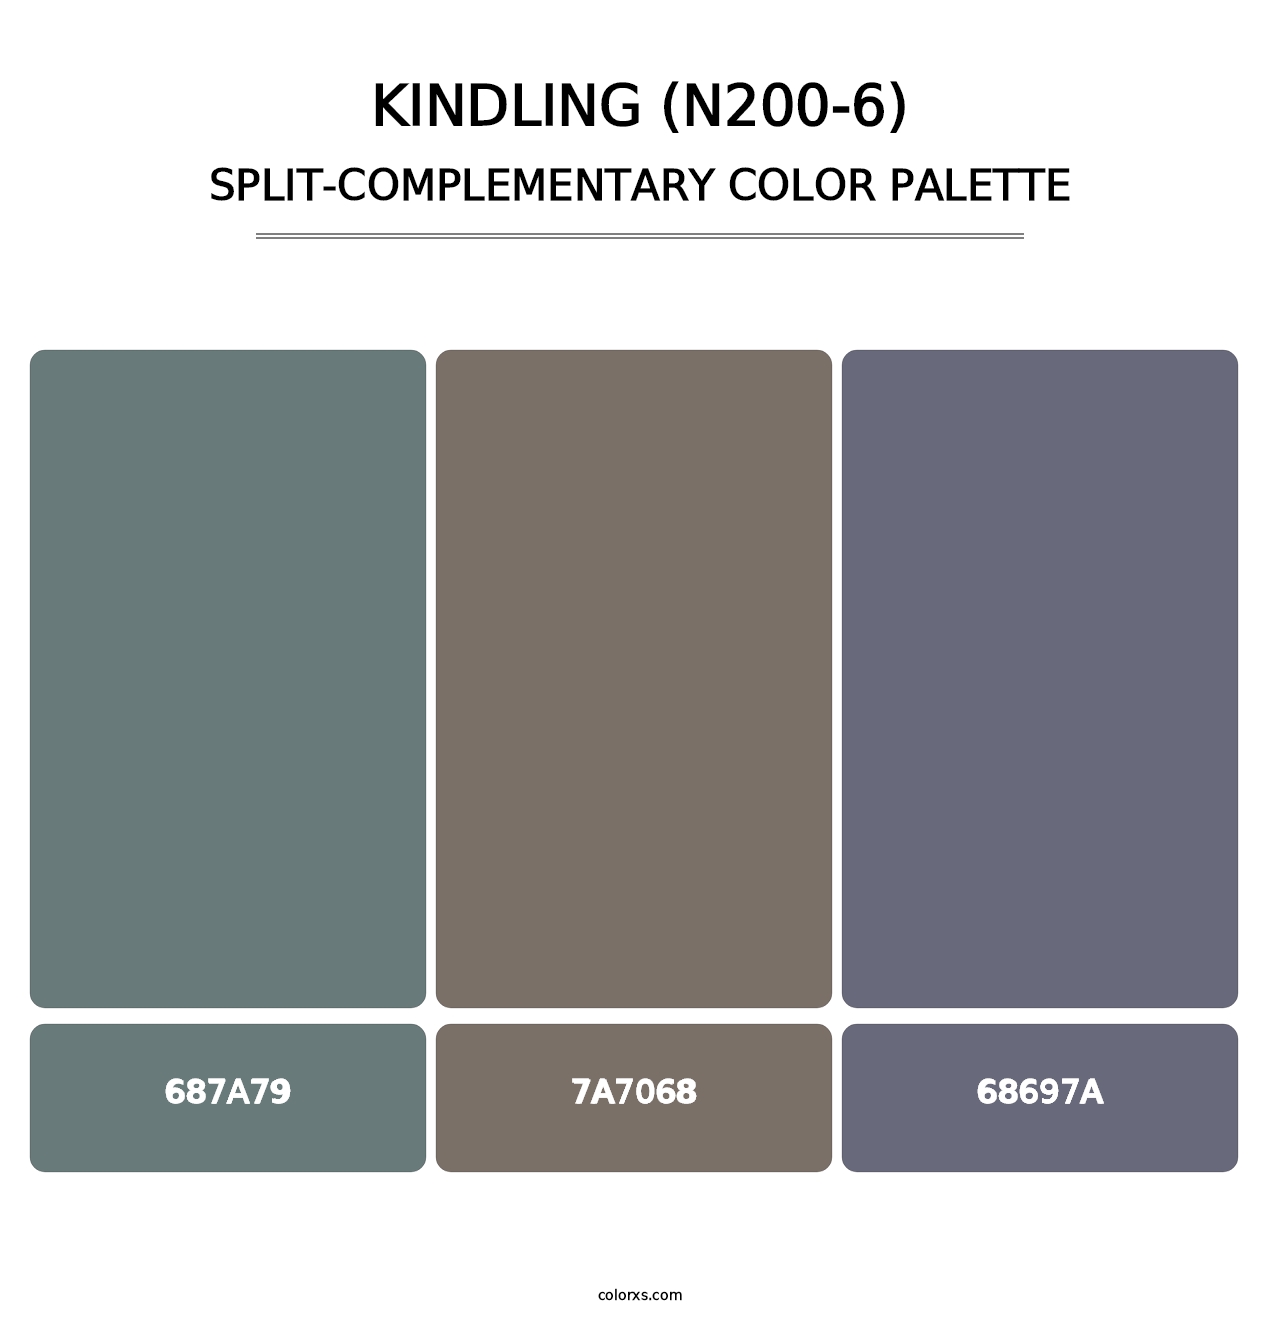 Kindling (N200-6) - Split-Complementary Color Palette